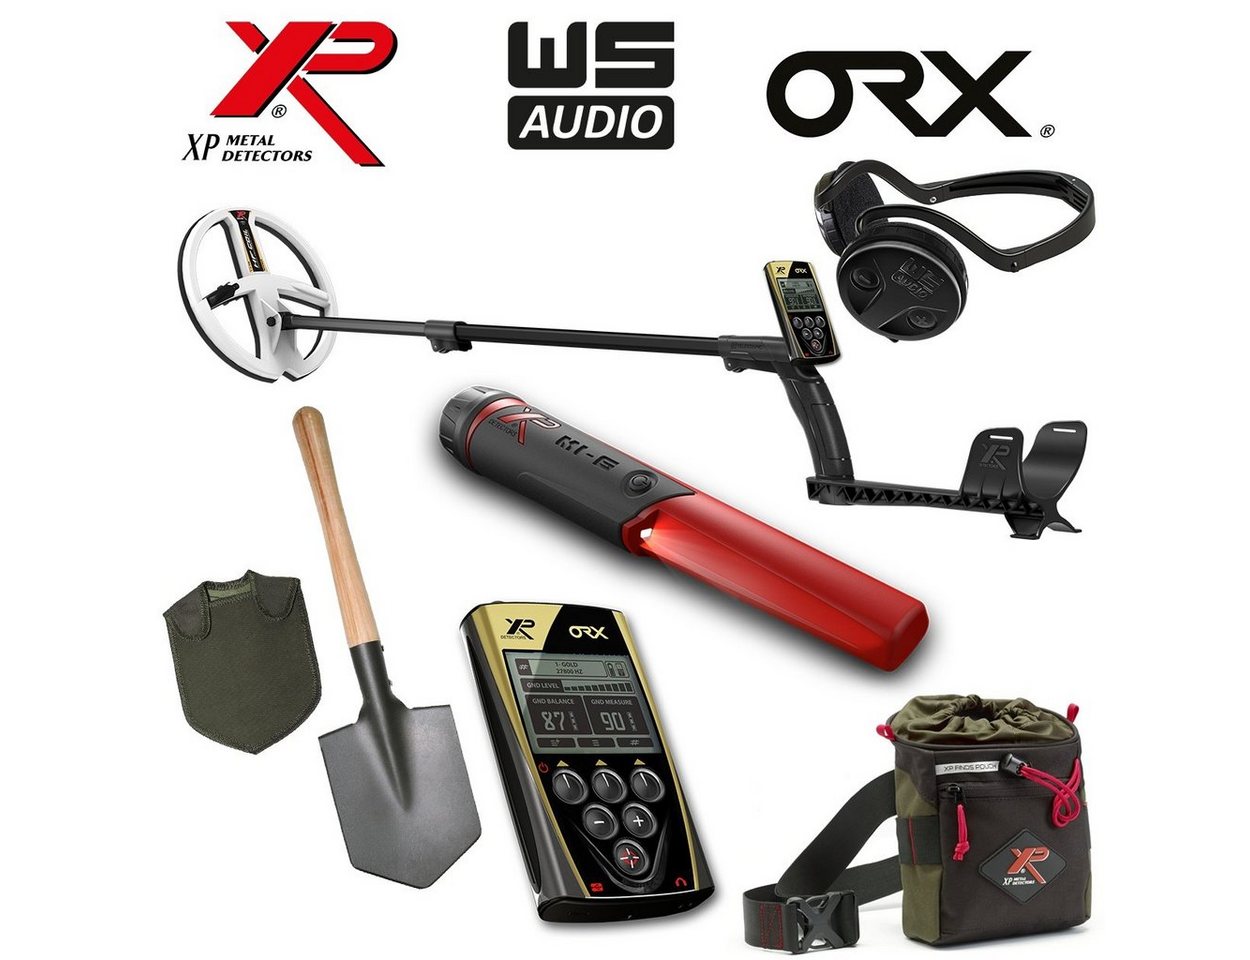 XP Metalldetektor XP ORX 22 HF RC WS Audio Komplettset von XP